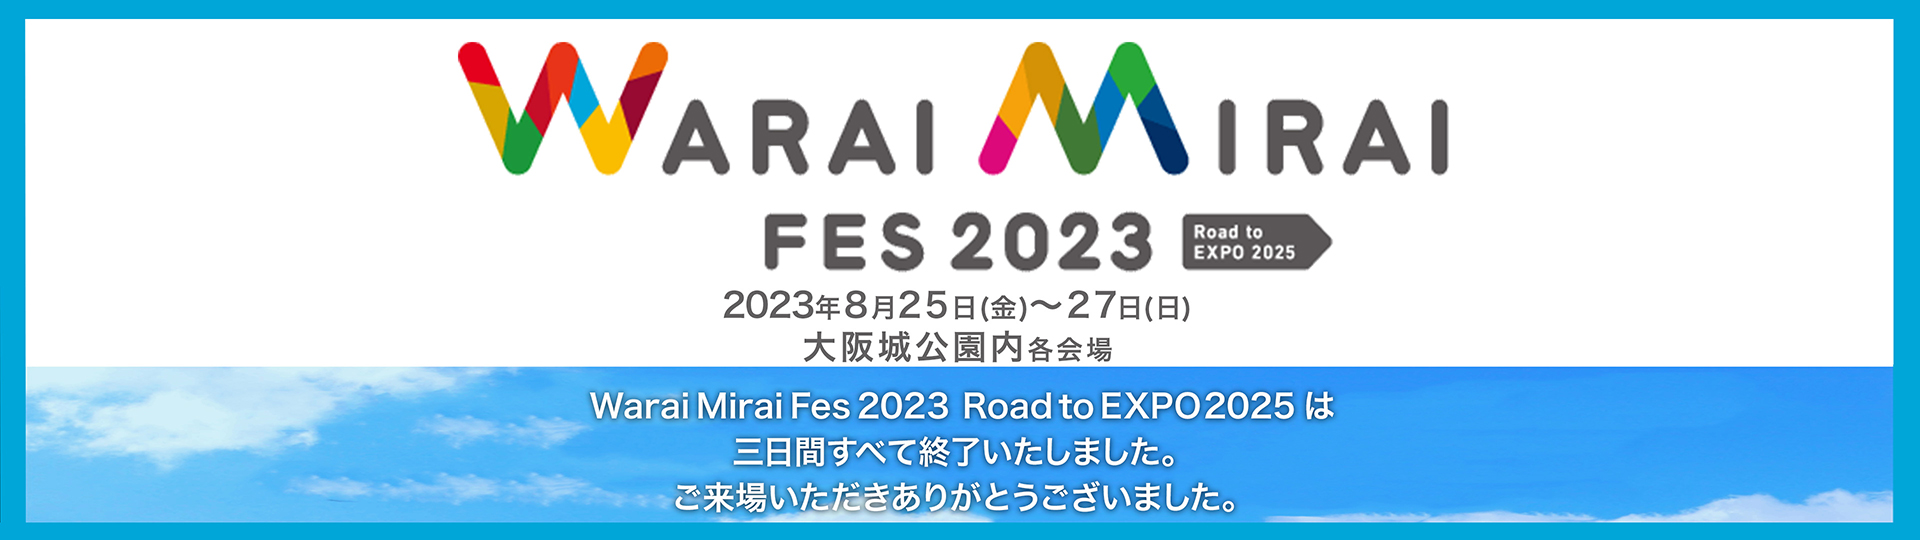 Warai Mirai Fes 2023 Road to EXPO 2025は三日間すべて終了いたしました。ご来場いただきありがとうございました。